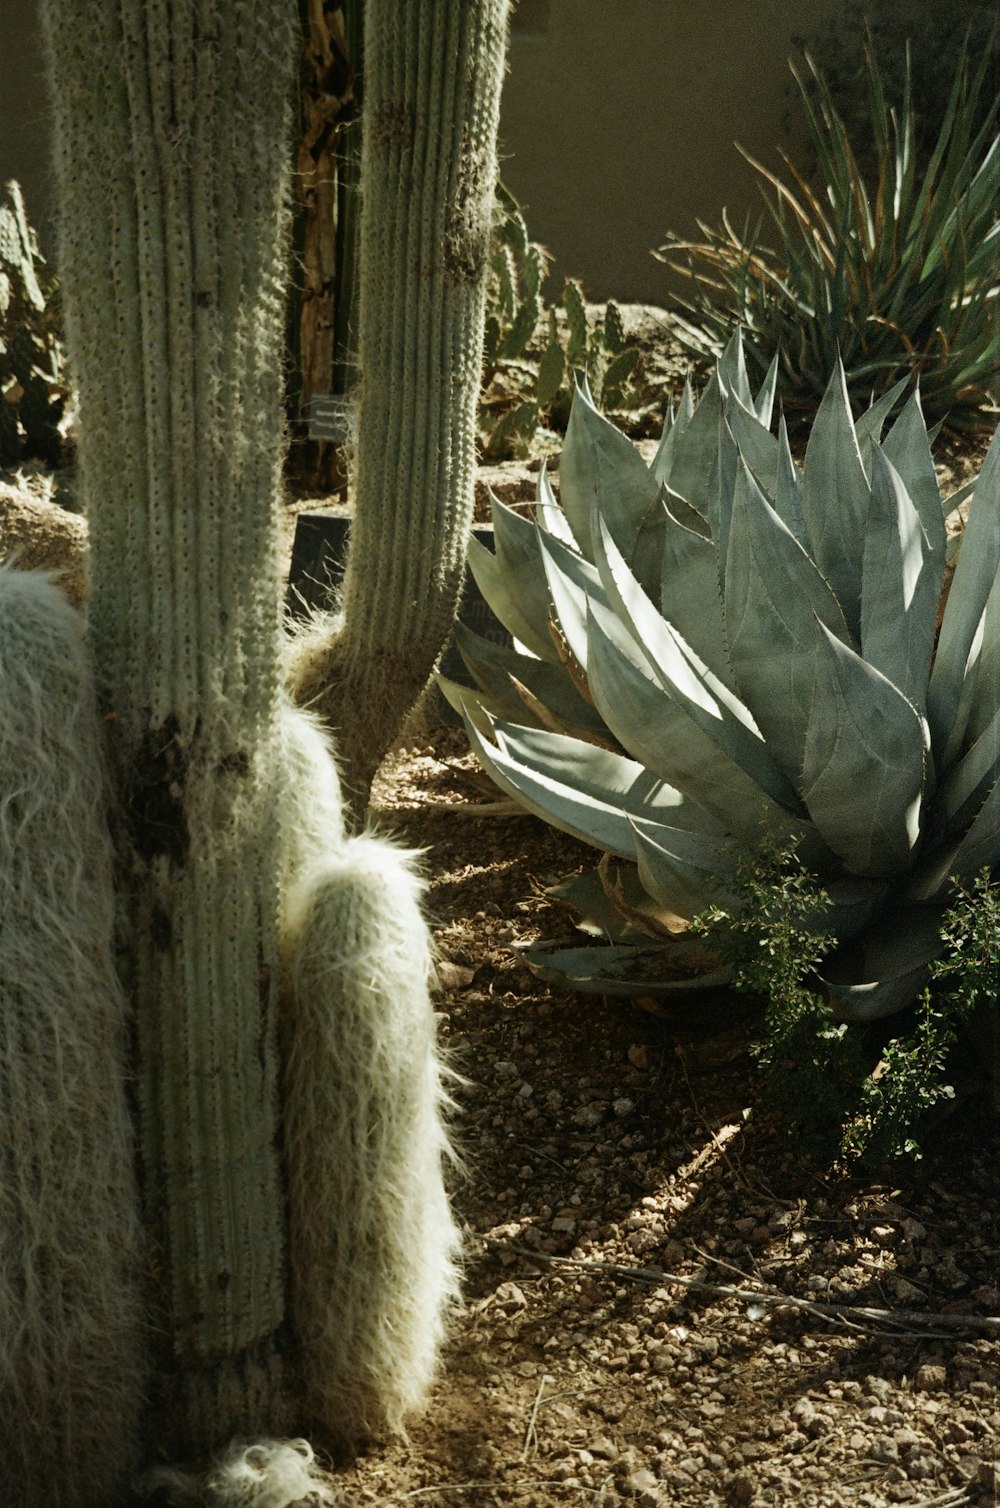 a cactus and a cacti in a garden